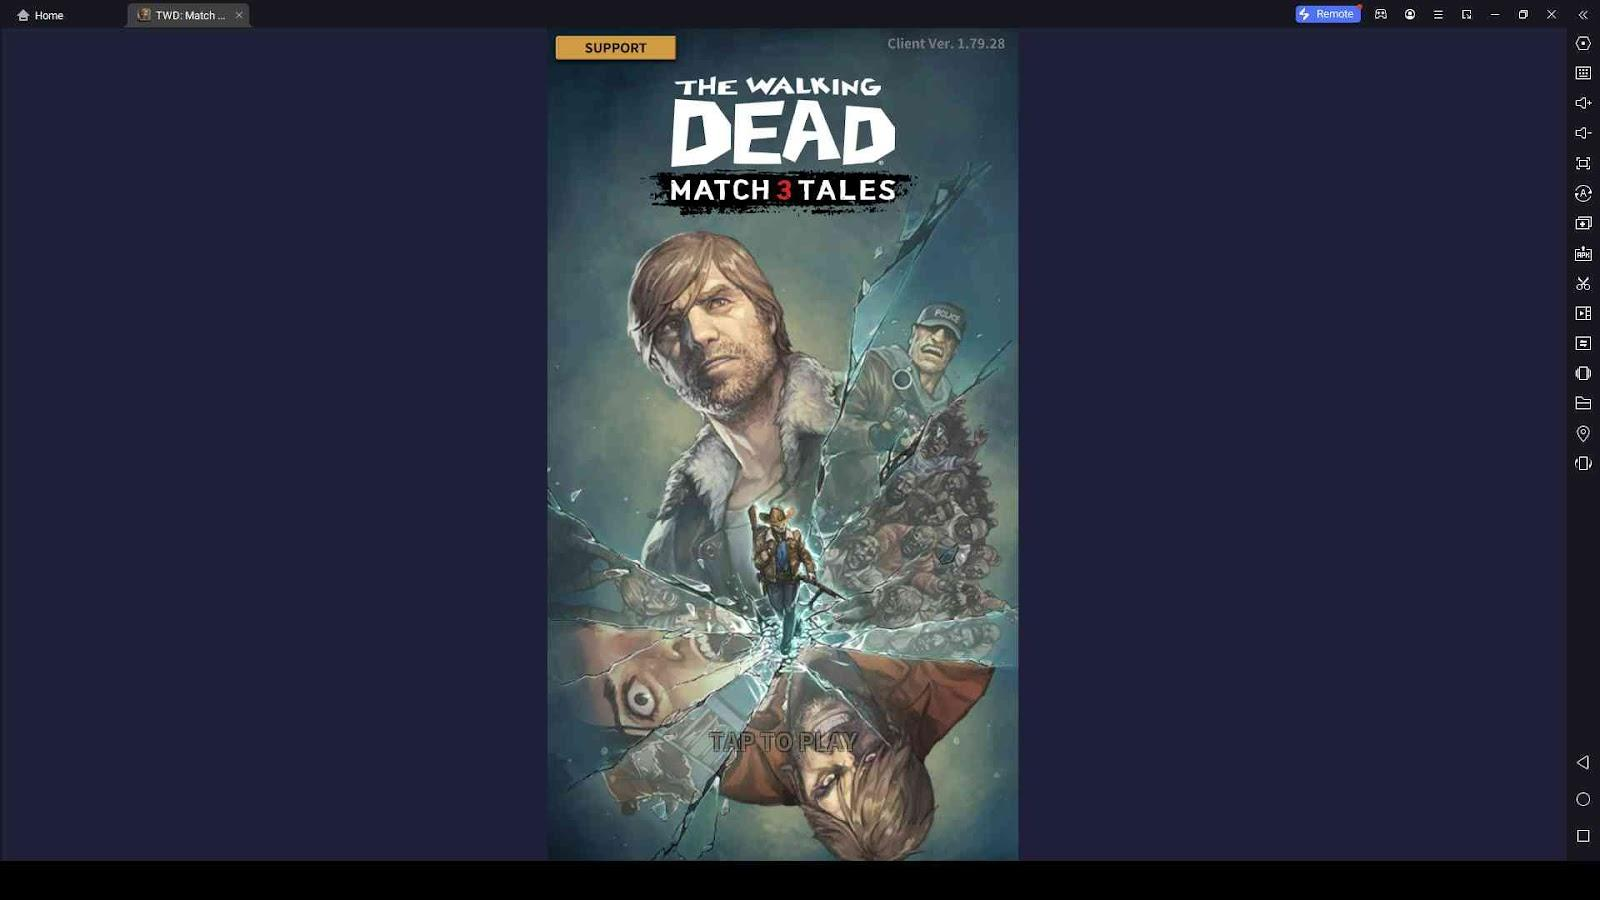 The Walking Dead Match 3 Tales Reroll Guide